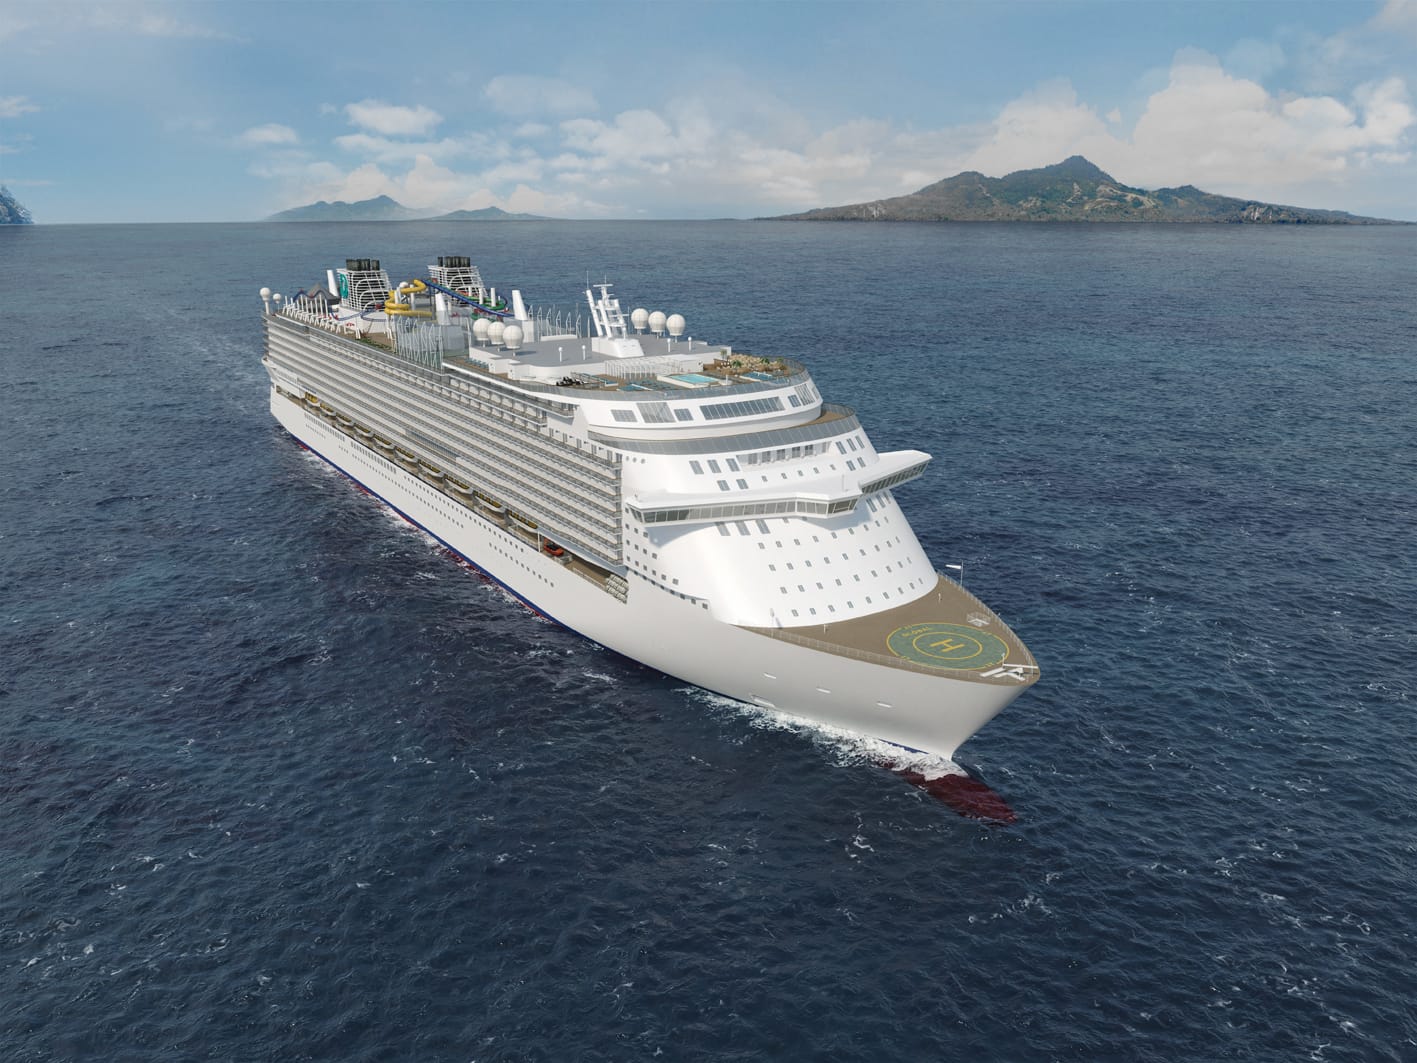 Eine Maximalbelegung von 9.500 Passagieren nennt die Werft für das noch namenlose Schiff der Global Class von Dream Cruises. Fahren wird es vor allem mit asiatischen Gästen.